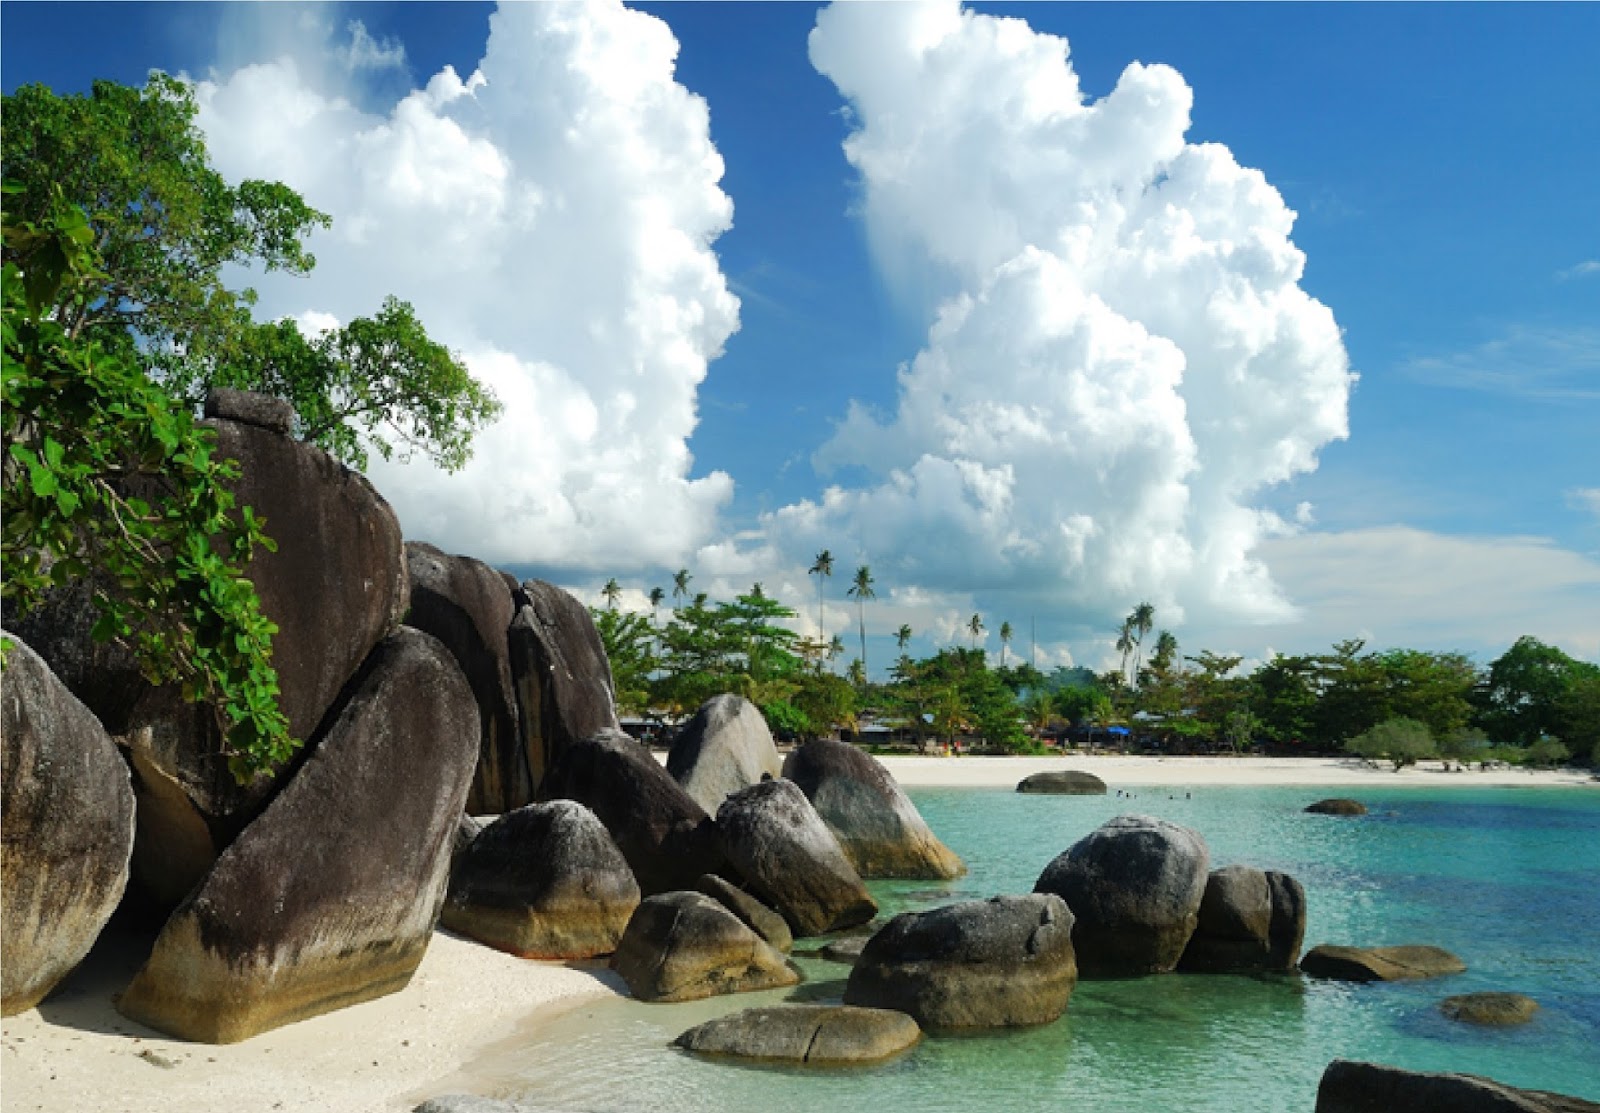 Inilah Tempat Berlibur Wisata Pulau Bangka Belitung yang 